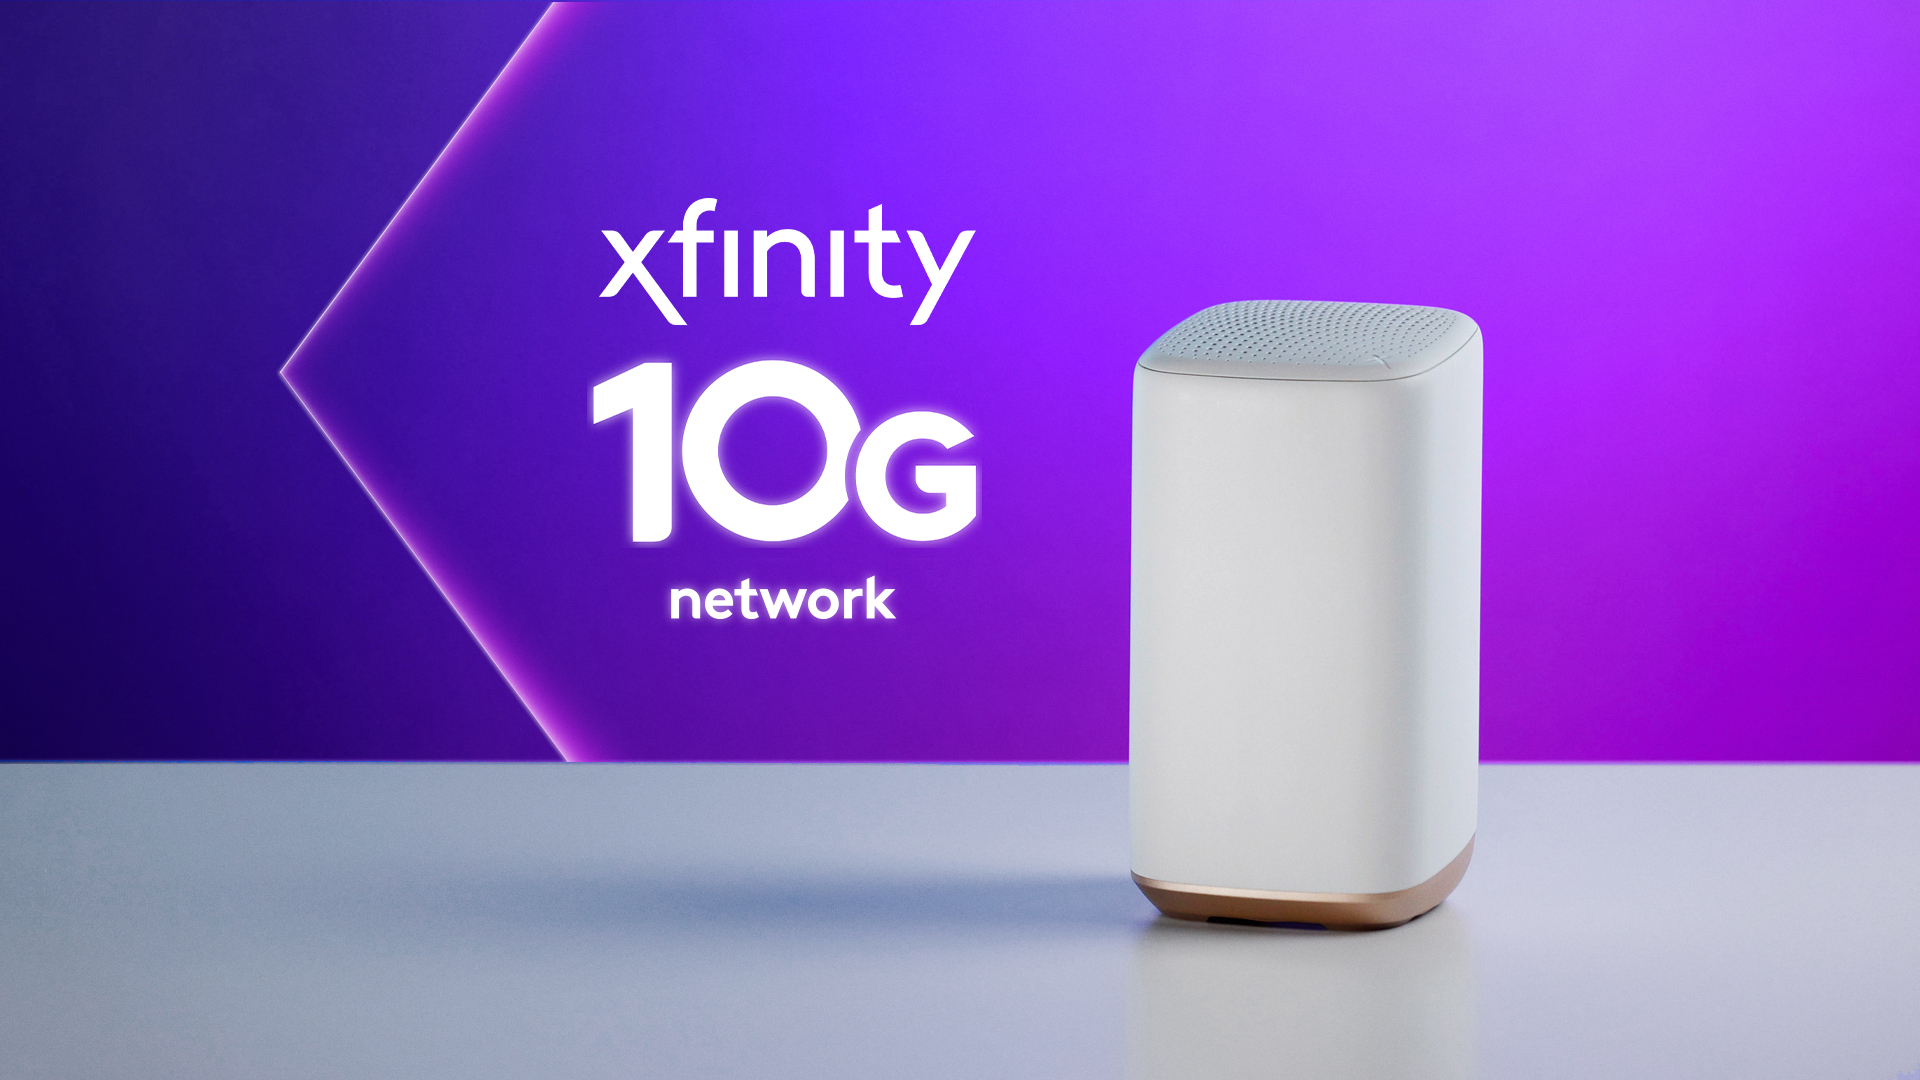 Xfinity 10G logo and Xfinity Gateway on a table.